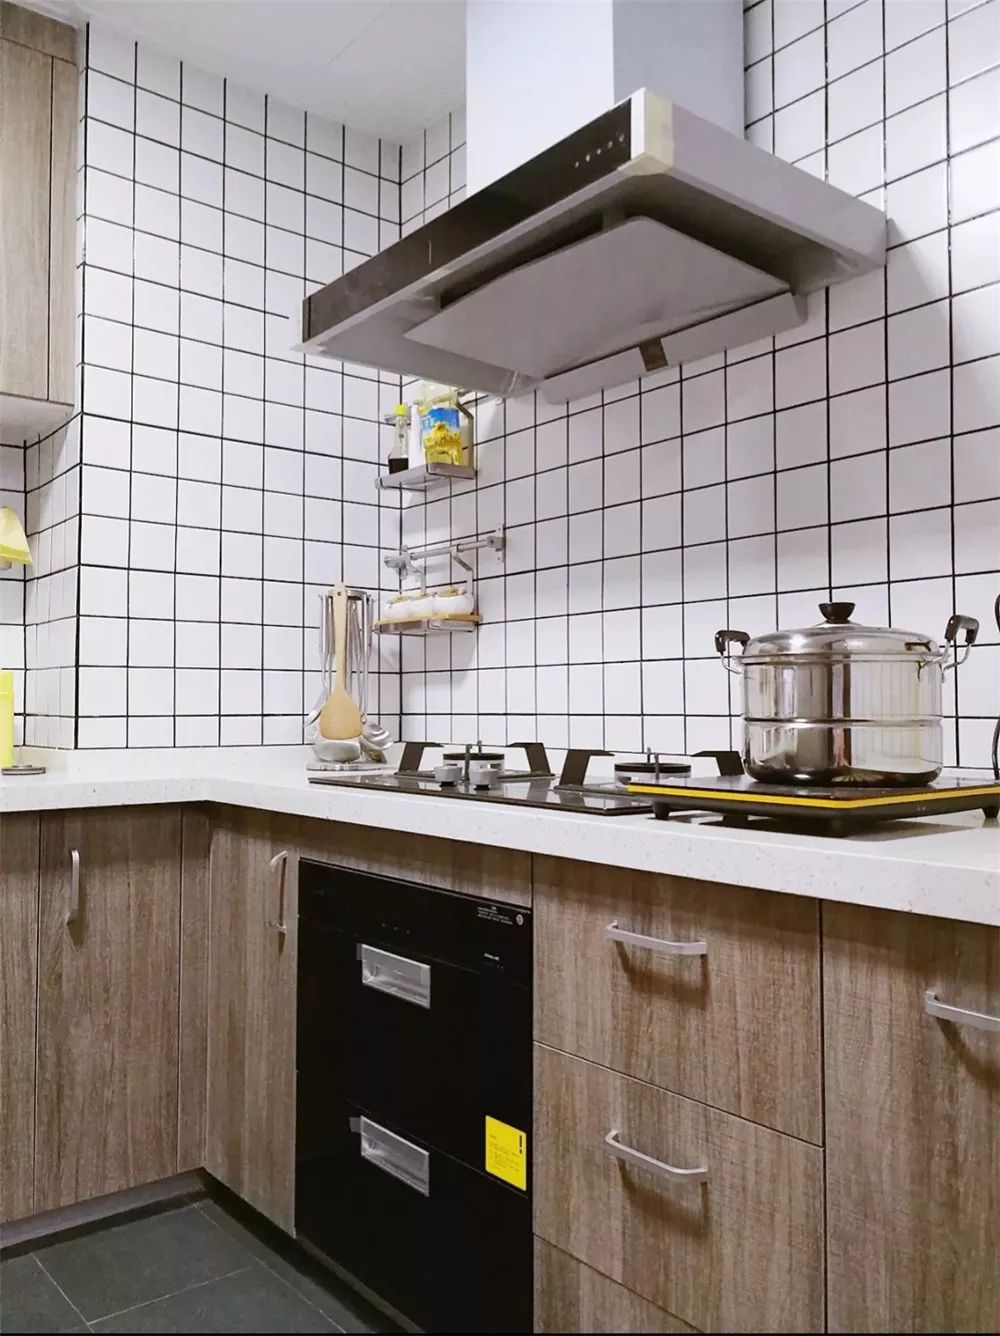 厨房墙面铺贴白色的九宫格瓷砖，让这个空间显得明亮且干净。